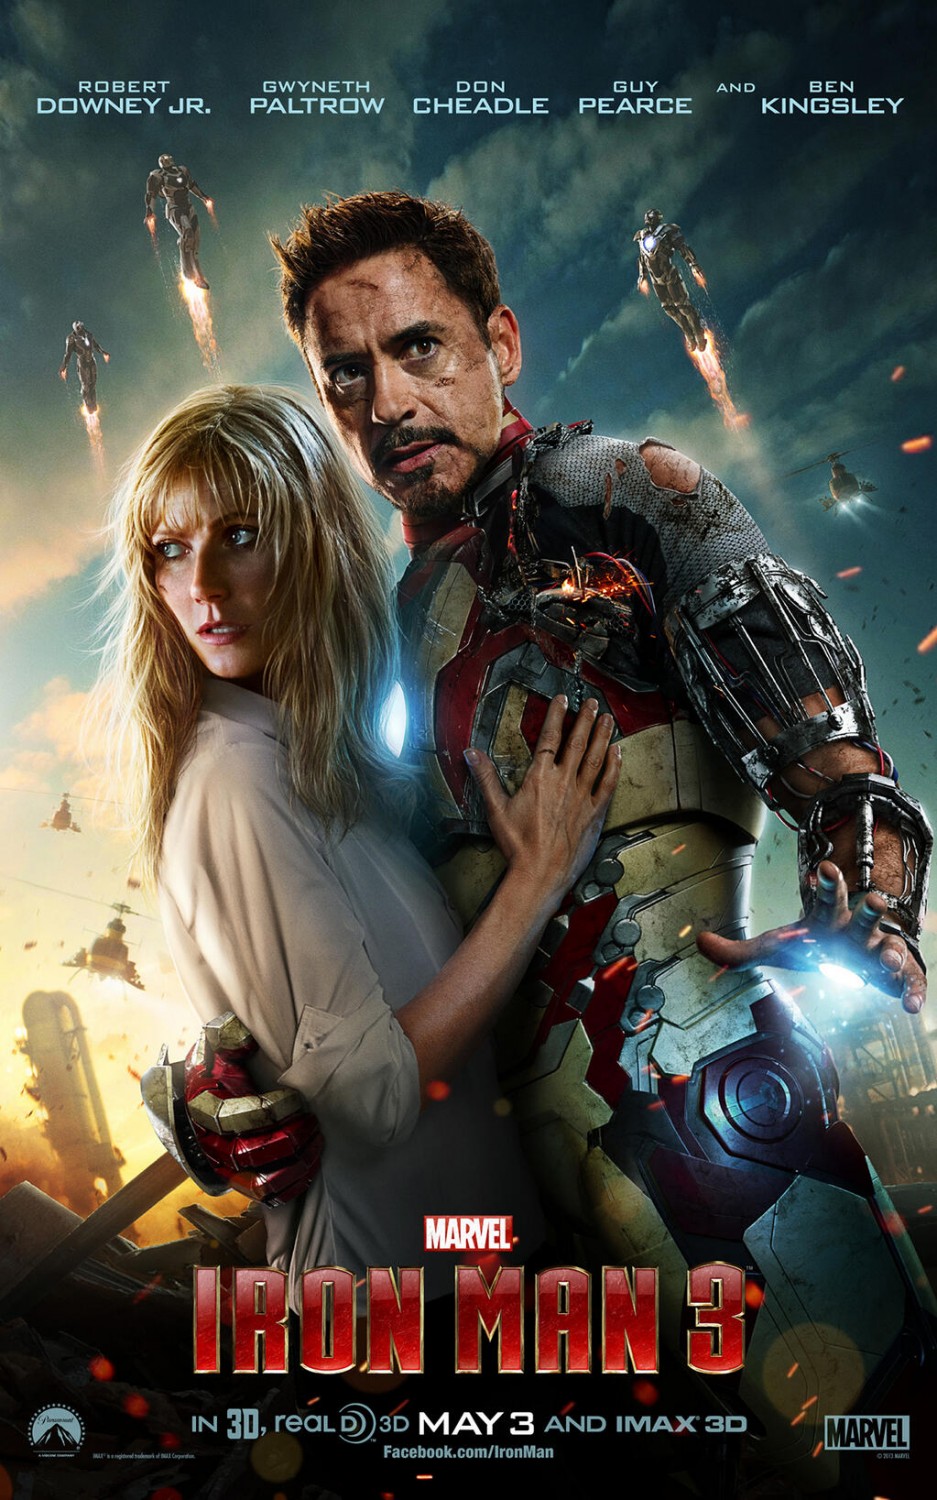 Hôm nay là ngày phát hành đĩa DVD chính thức của bộ phim Iron Man